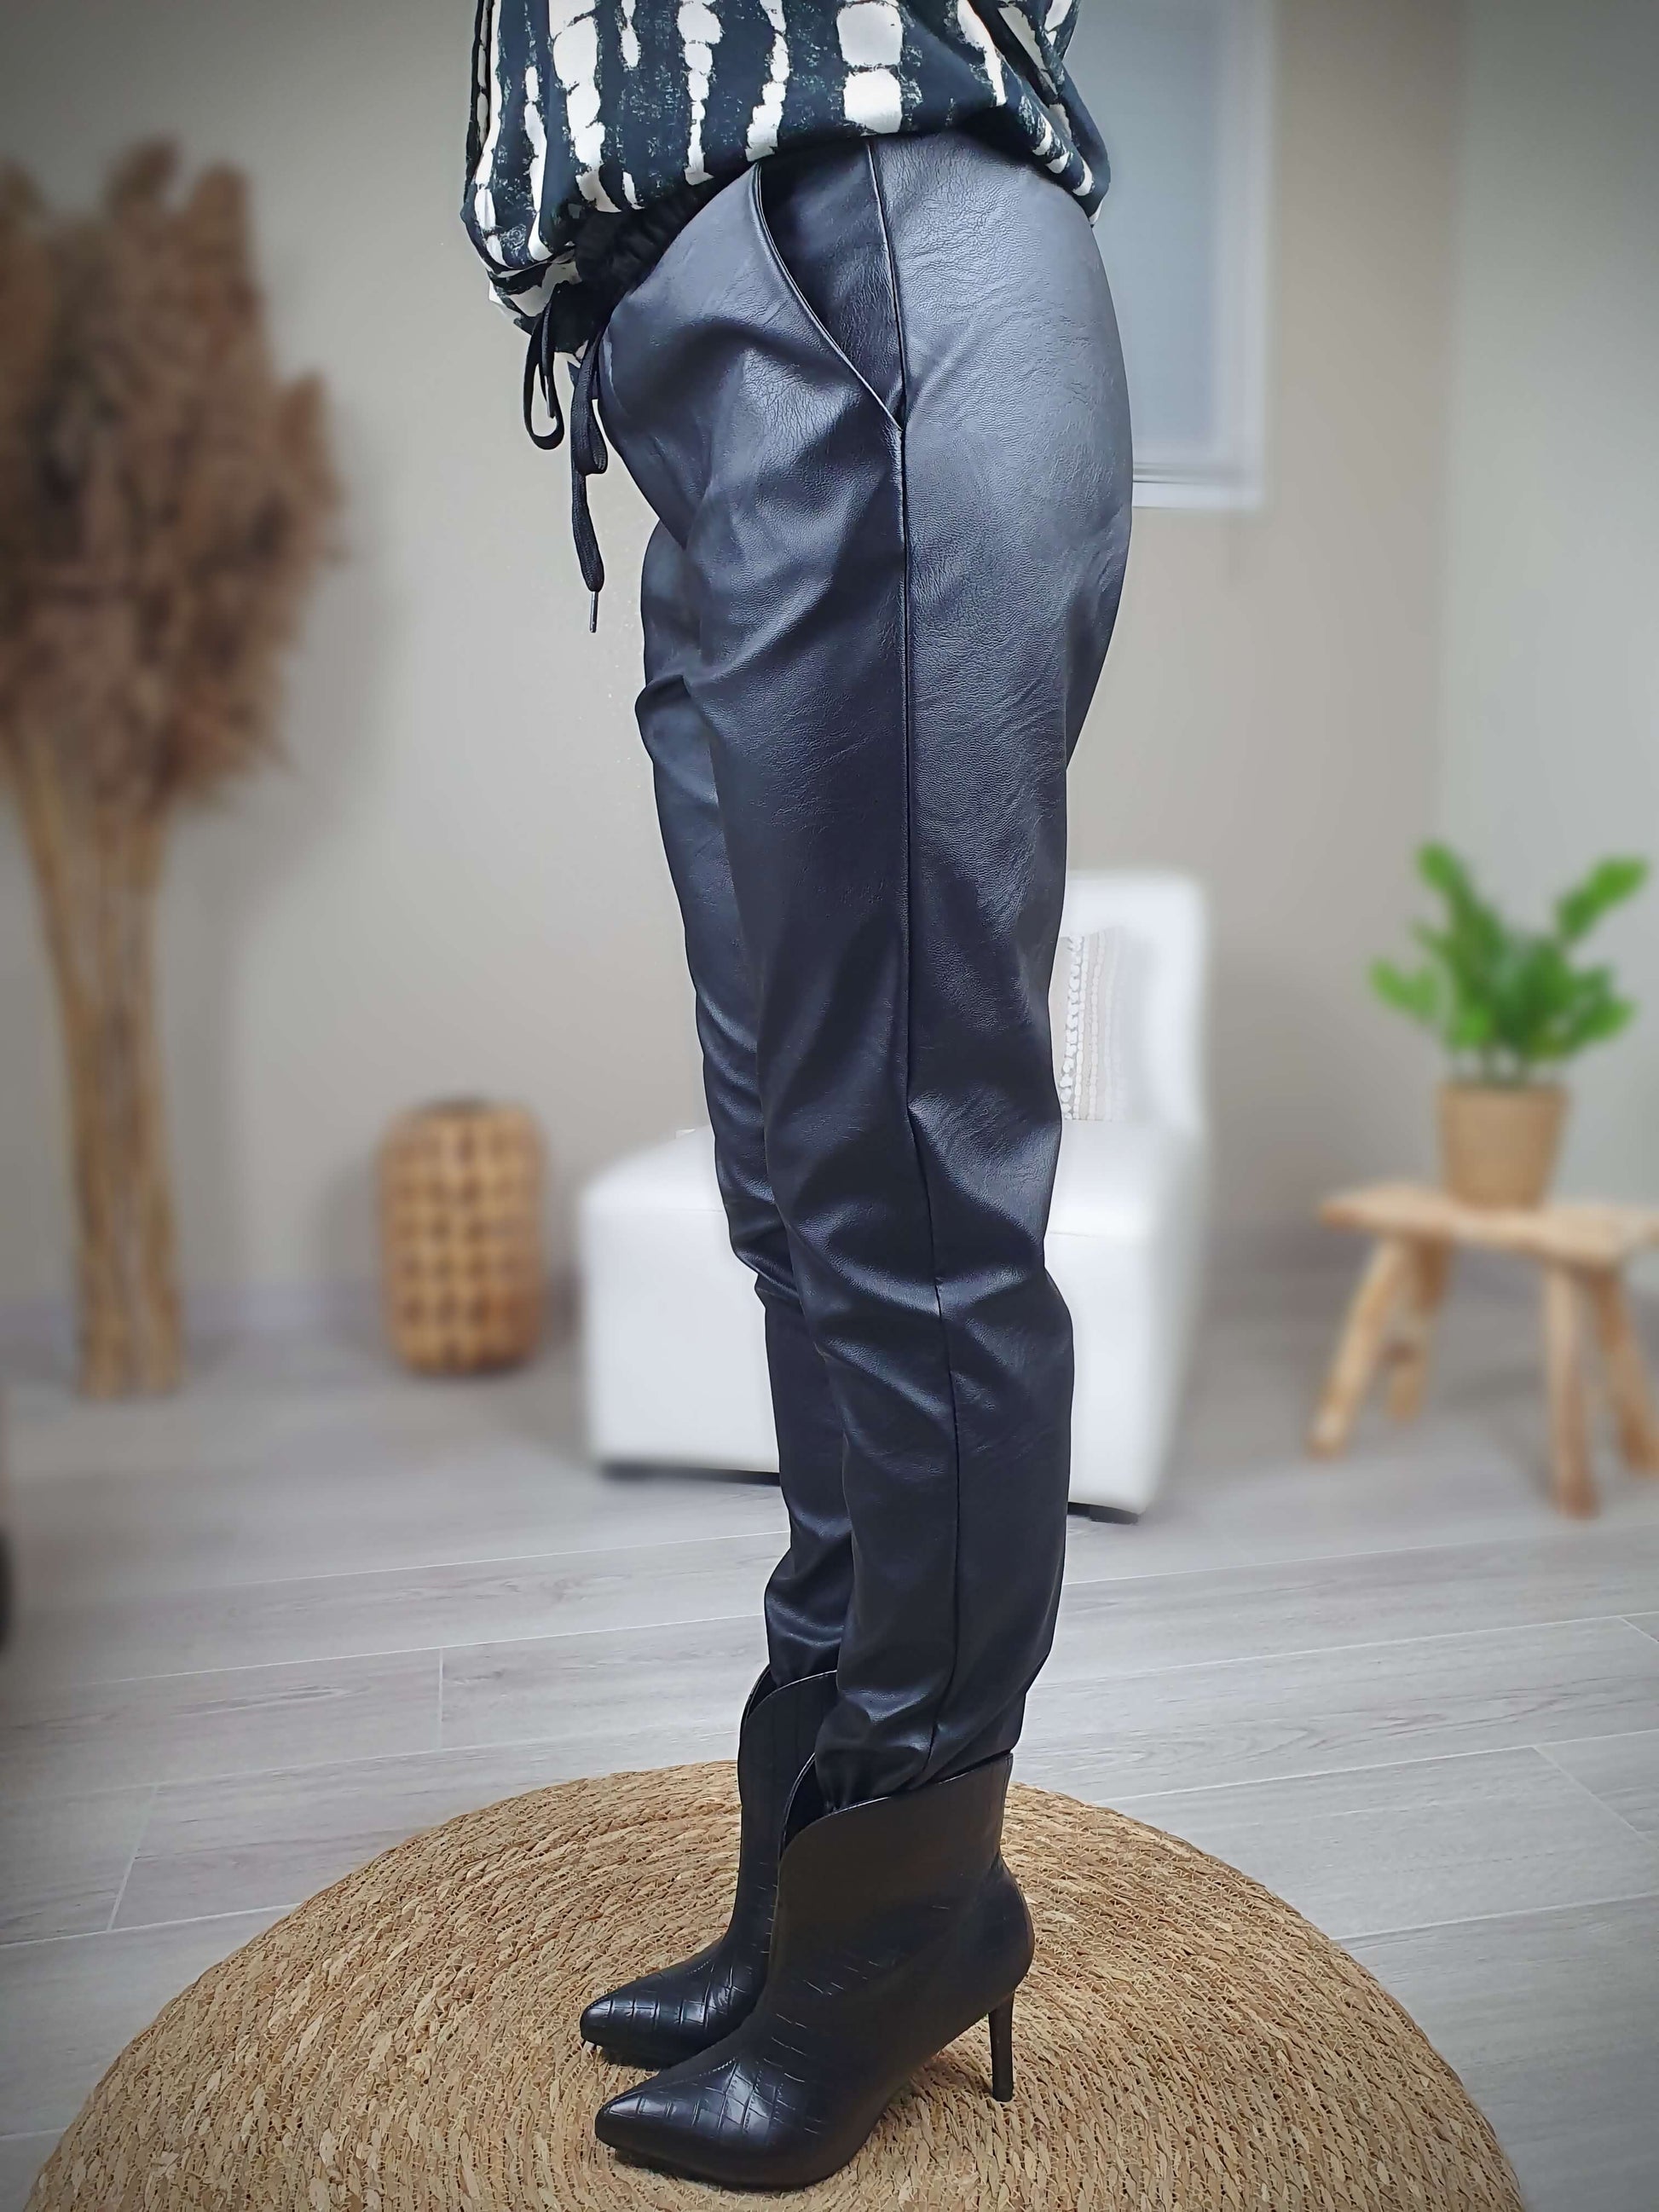 Pantalon simili cuir noir, coupe droite resserrée sur le bas par un élastique avec une poches italienne de chaque coté. La taille du pantalon est élastiquée et ajustable avec lien de serrage. A decouvrir sur www.gayano.fr